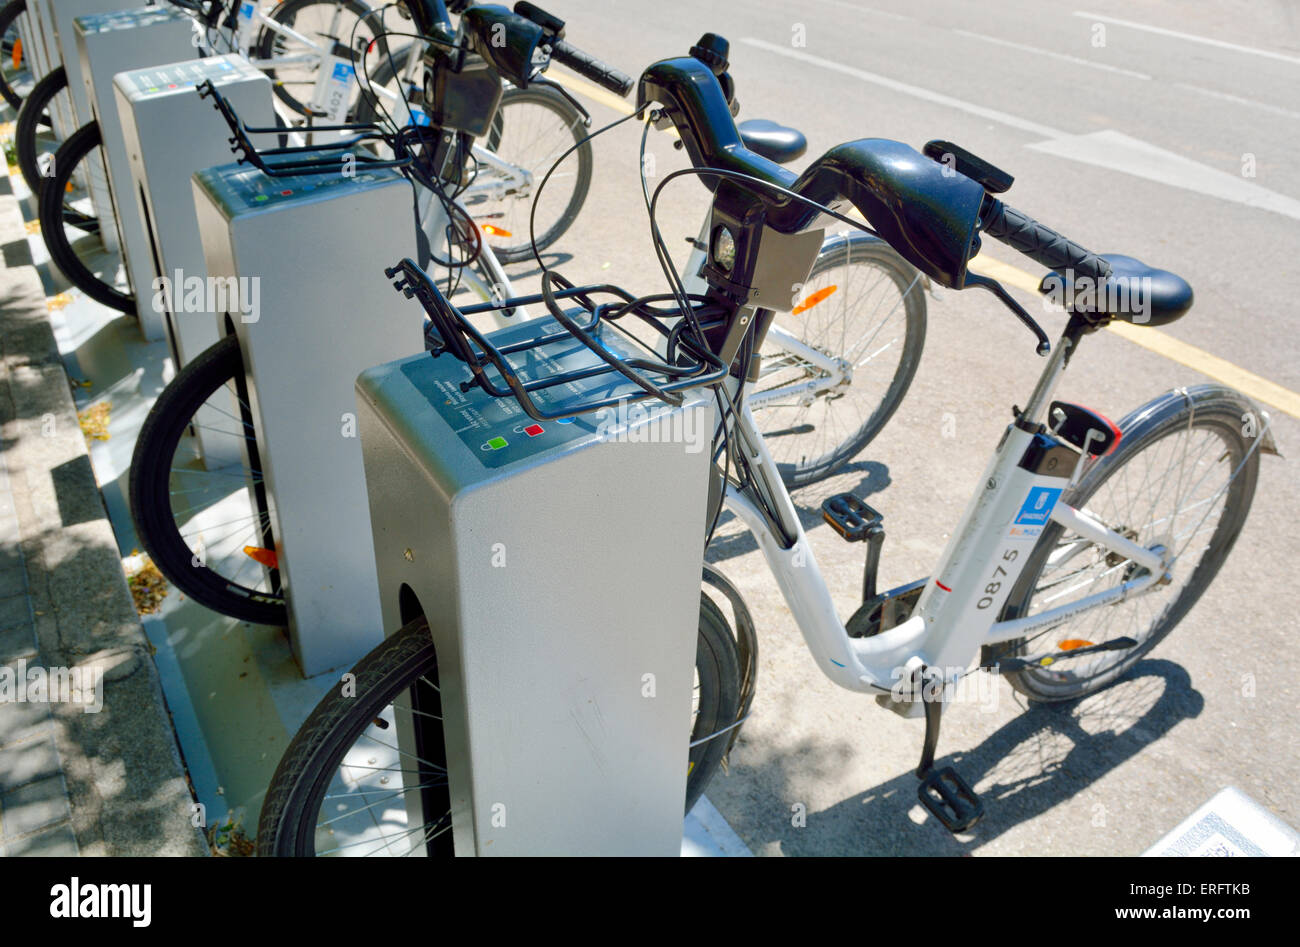 Reihe für mieten BiciMad e-Bikes in der Ladestation steht, Madrid, Spanien Stockfoto